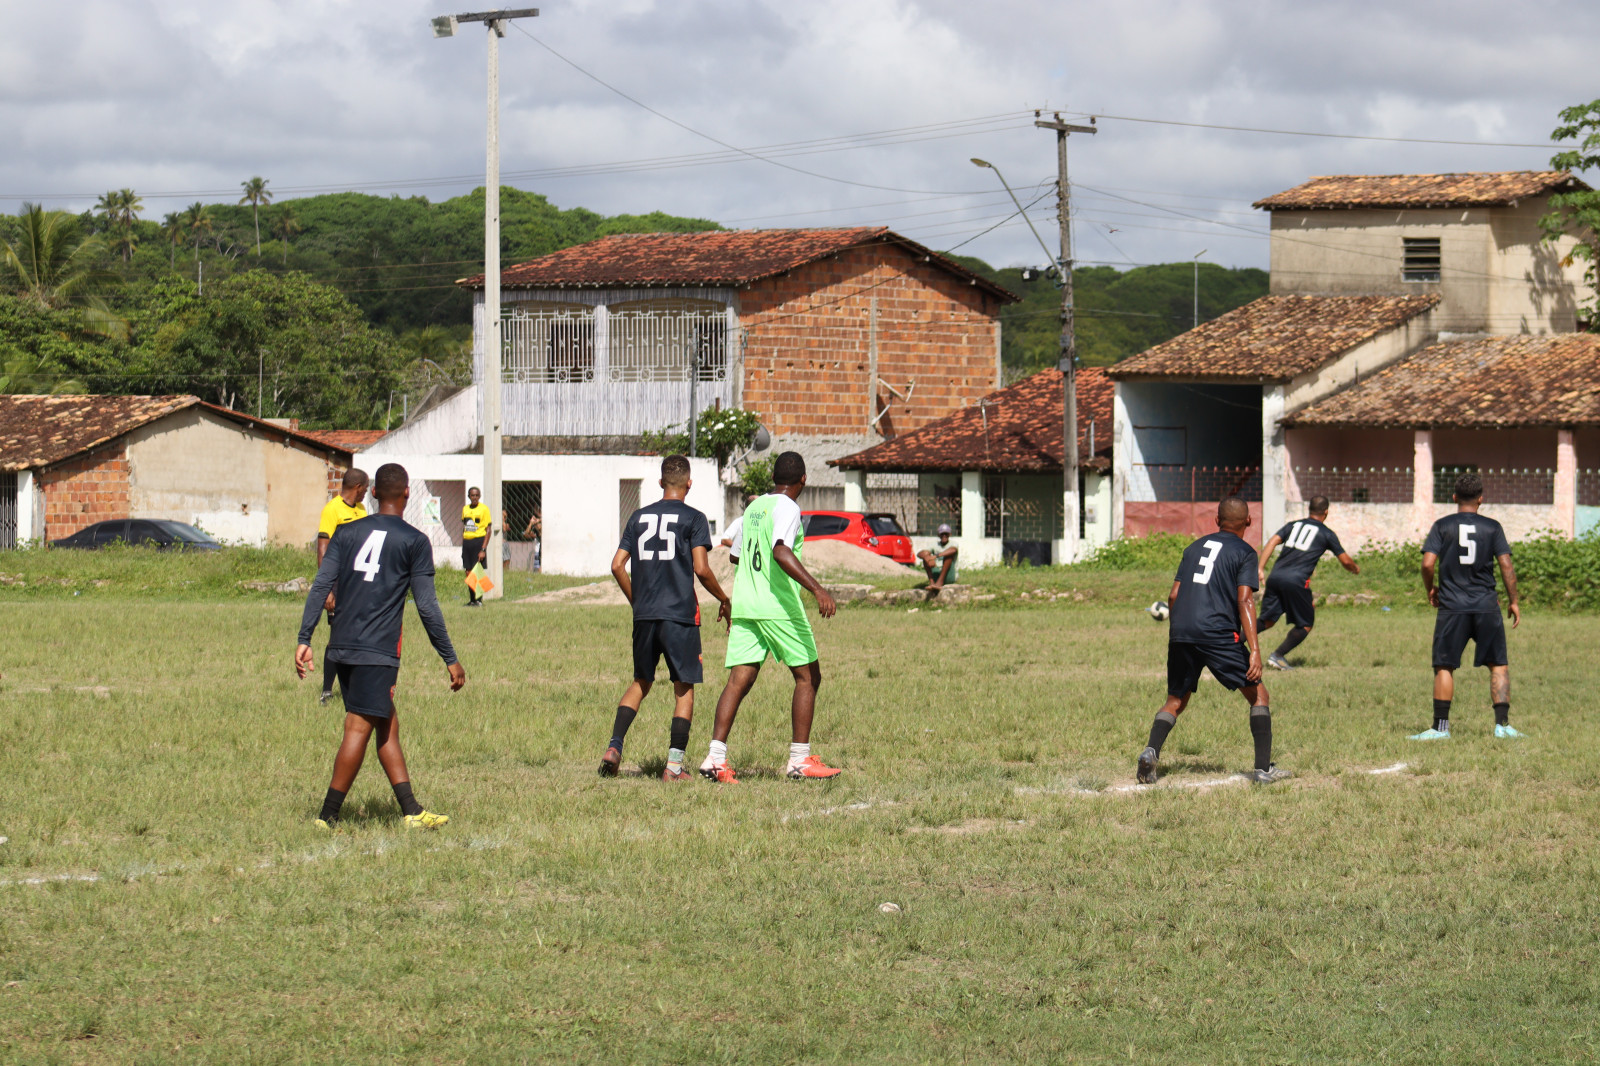 Futebol na aldeia :: Agua Boa News